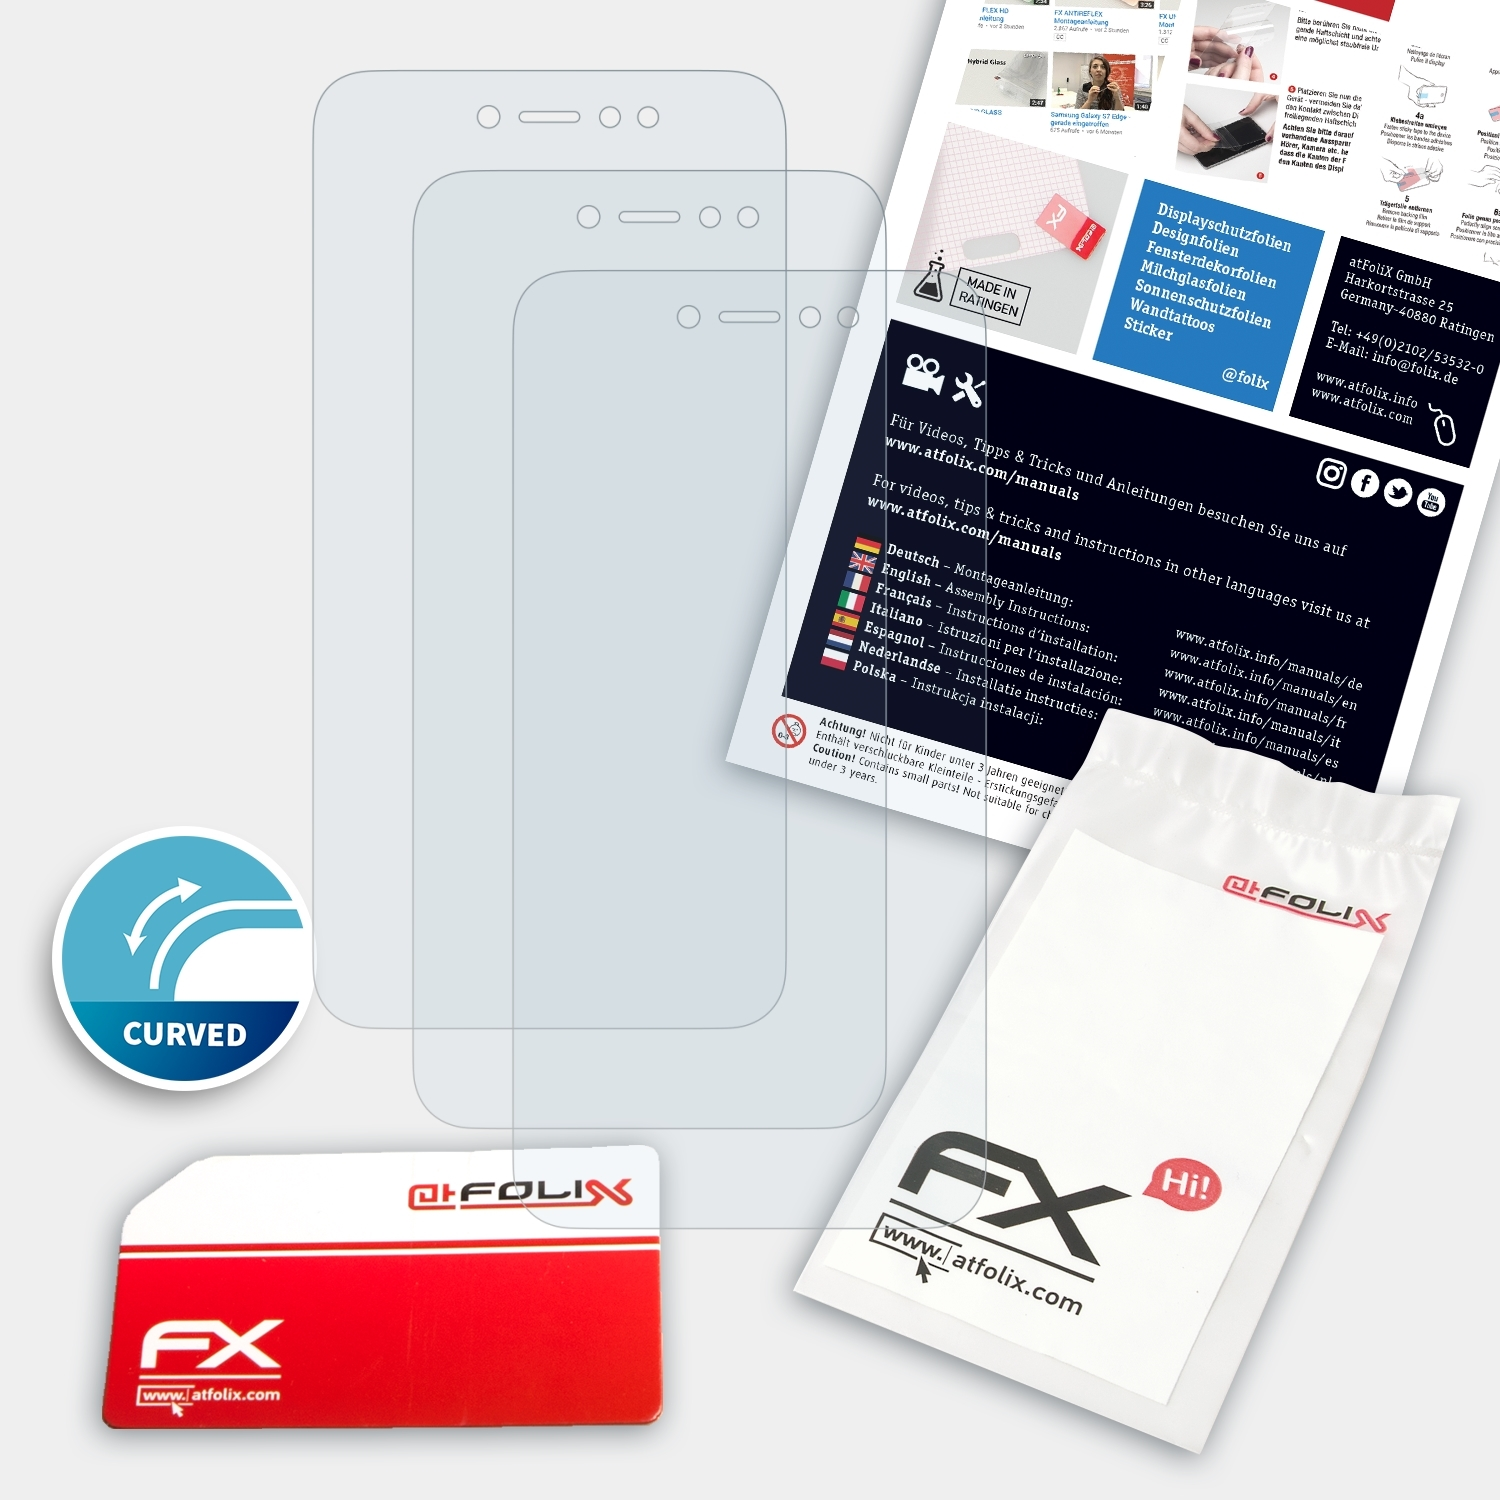 ATFOLIX Redmi Note FX-ActiFleX Displayschutz(für 3x Xiaomi 5A)